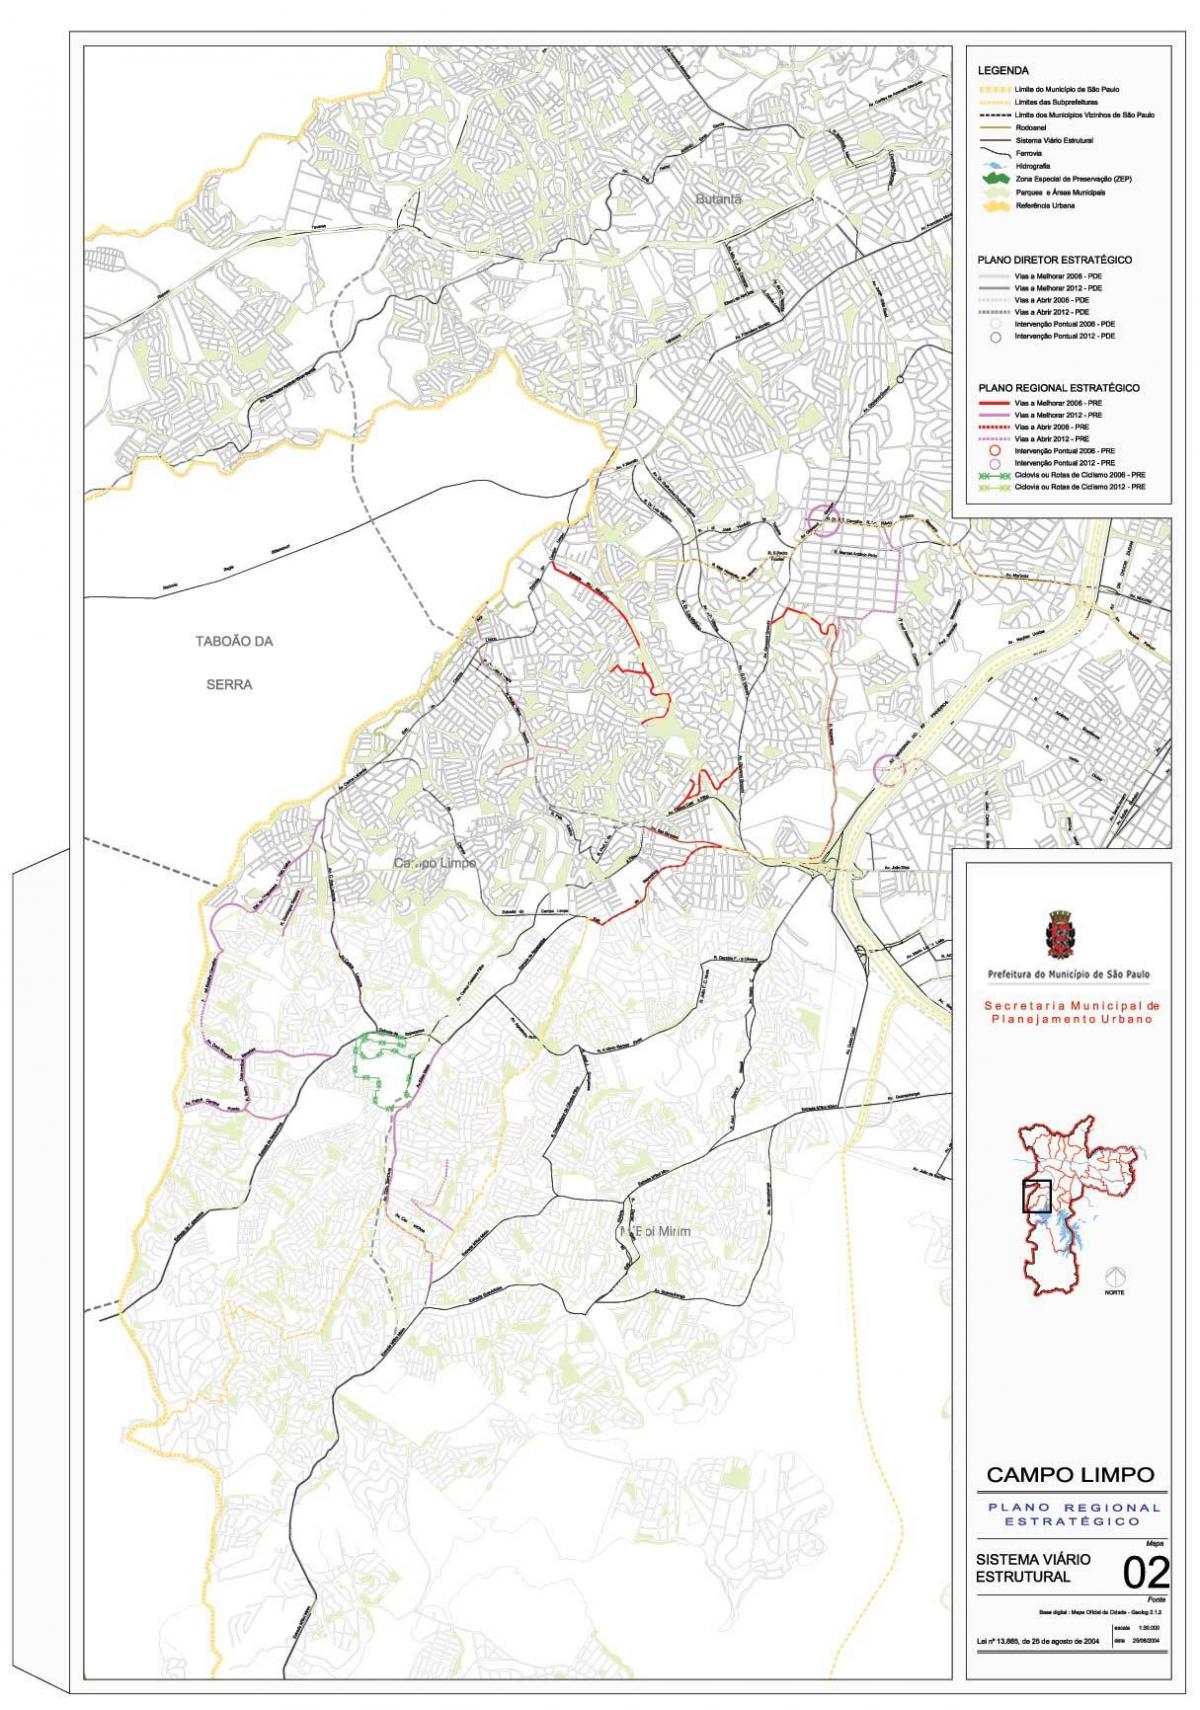 Kaart van Campo Limpo São Paulo - Wegen